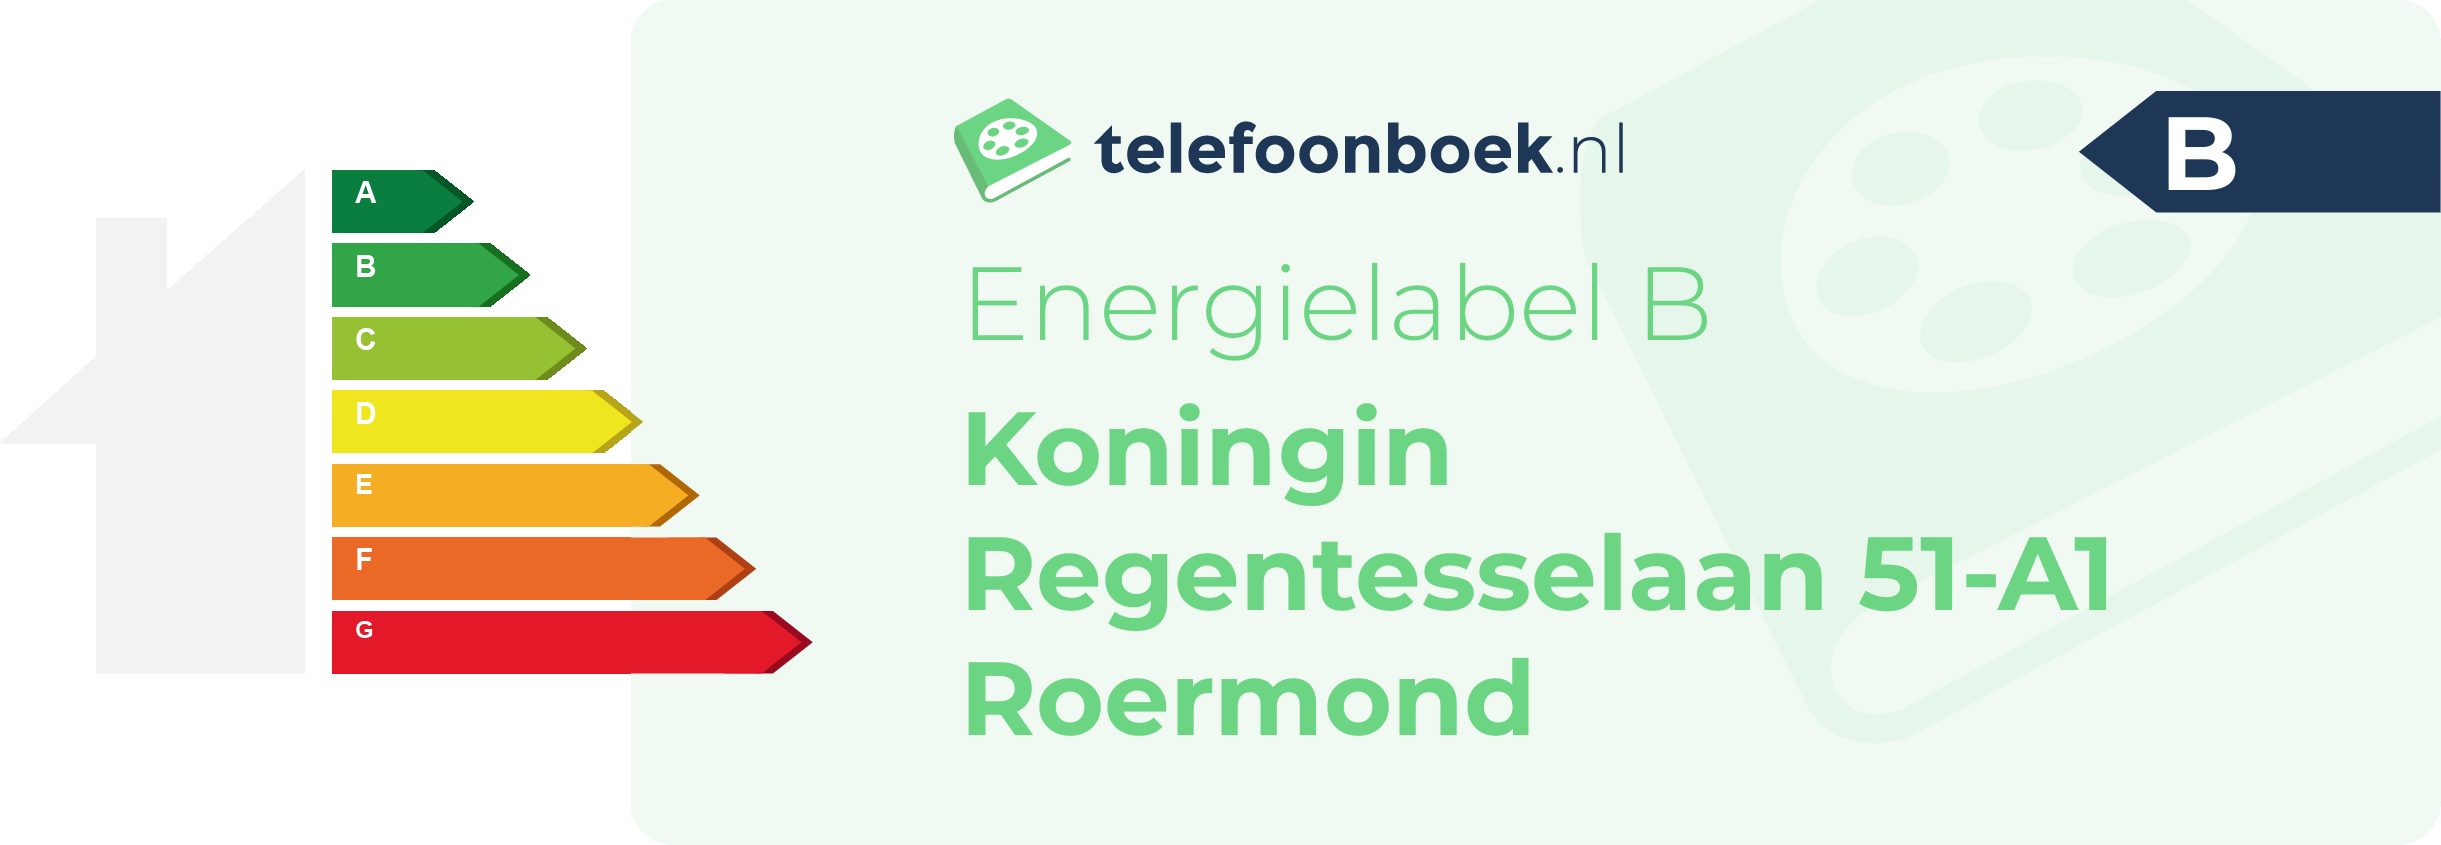 Energielabel Koningin Regentesselaan 51-A1 Roermond